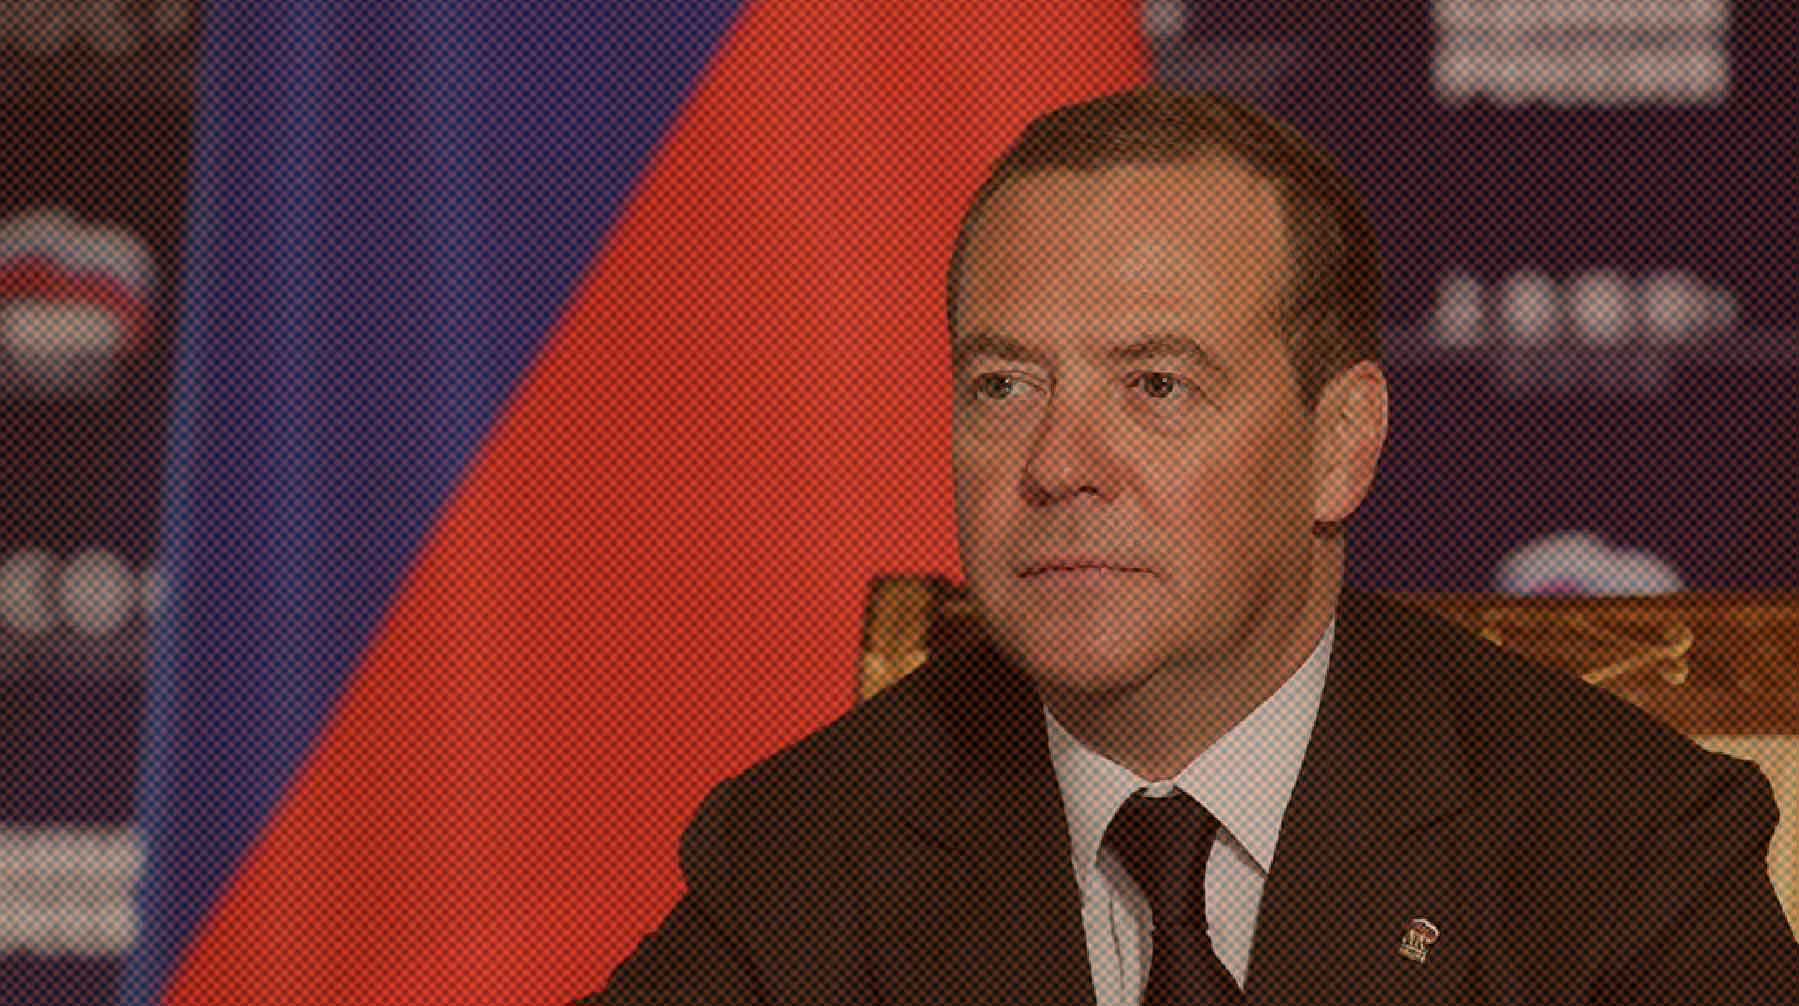 Dailystorm - Медведев предупредил о возможности российского удара по АЭС Украины и ядерным объектам Восточной Европы